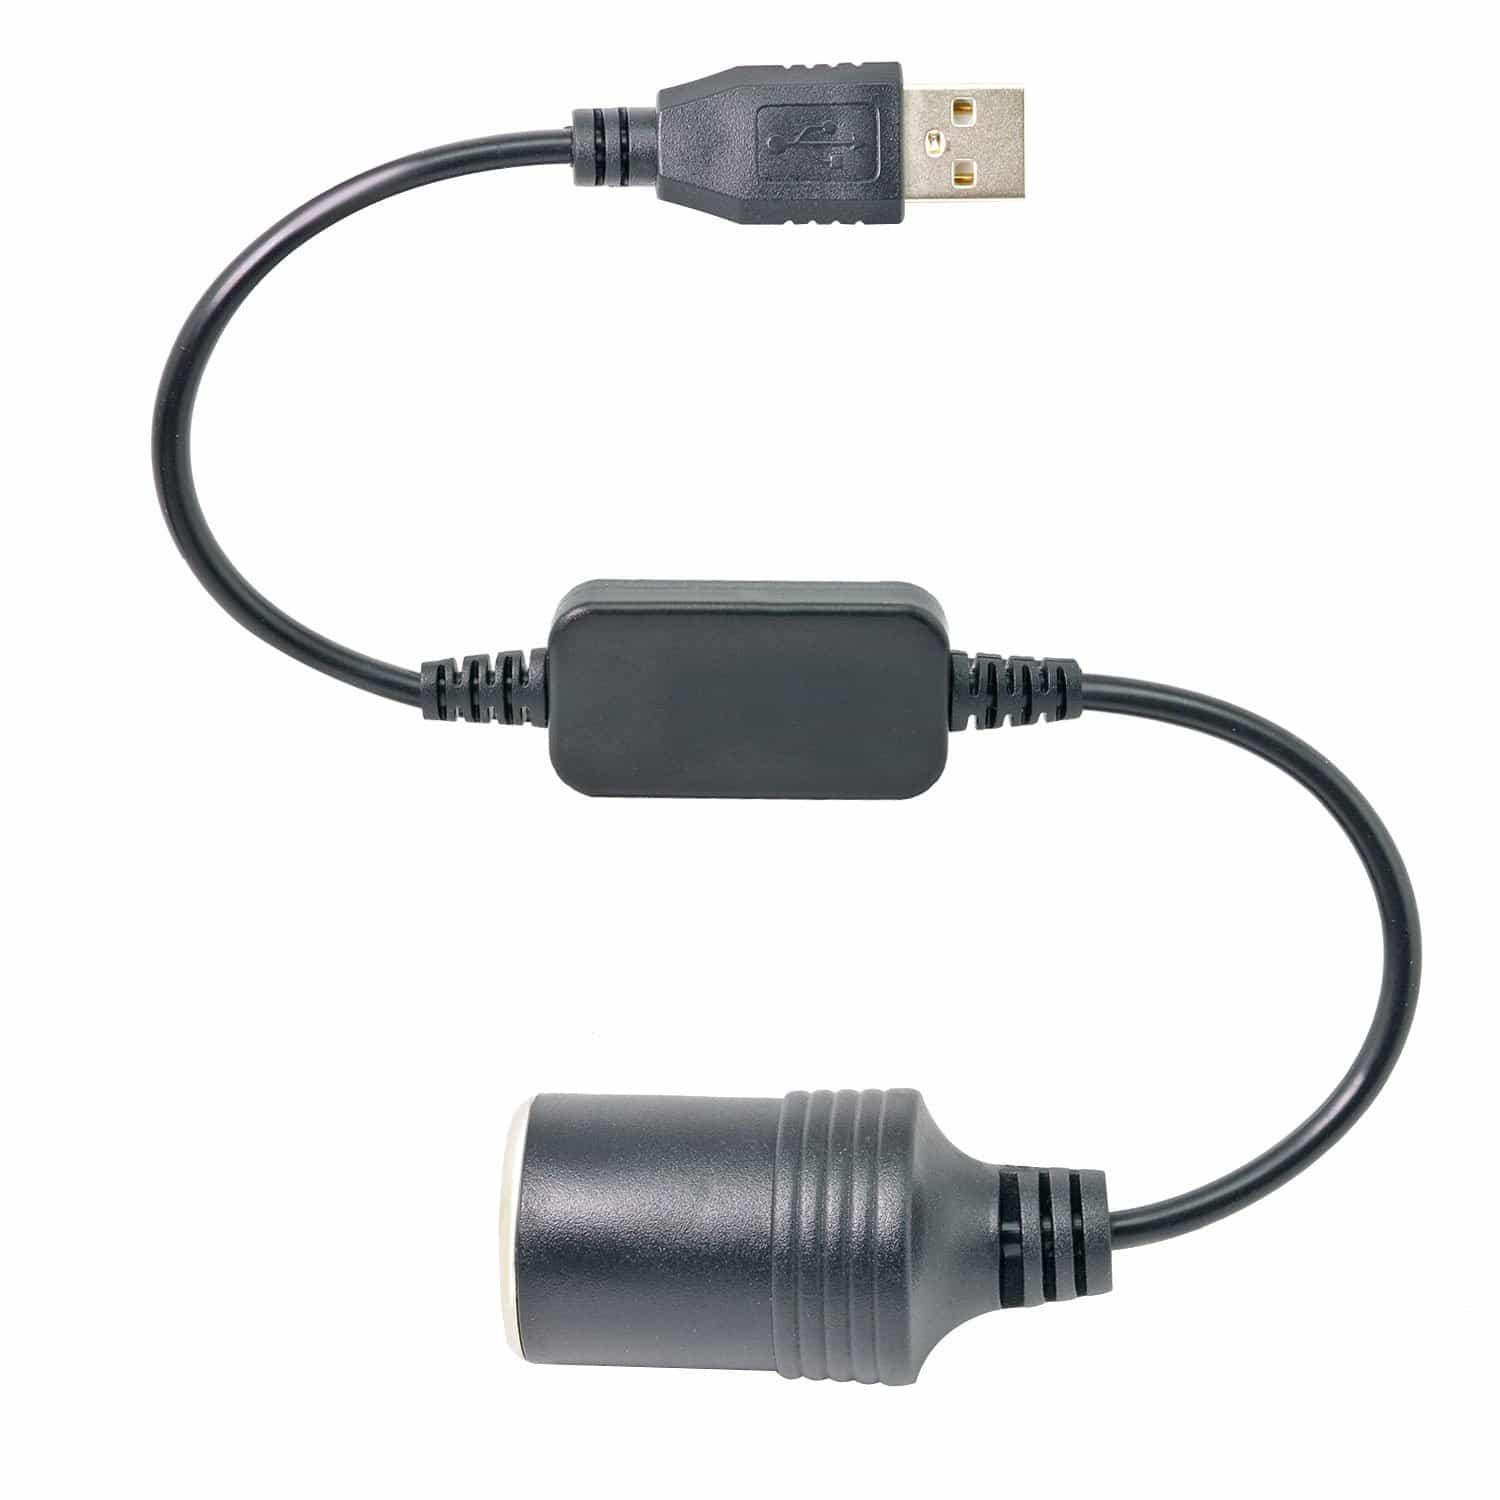  USB A Male to 12V Car Cigarette Lighter Socket Female